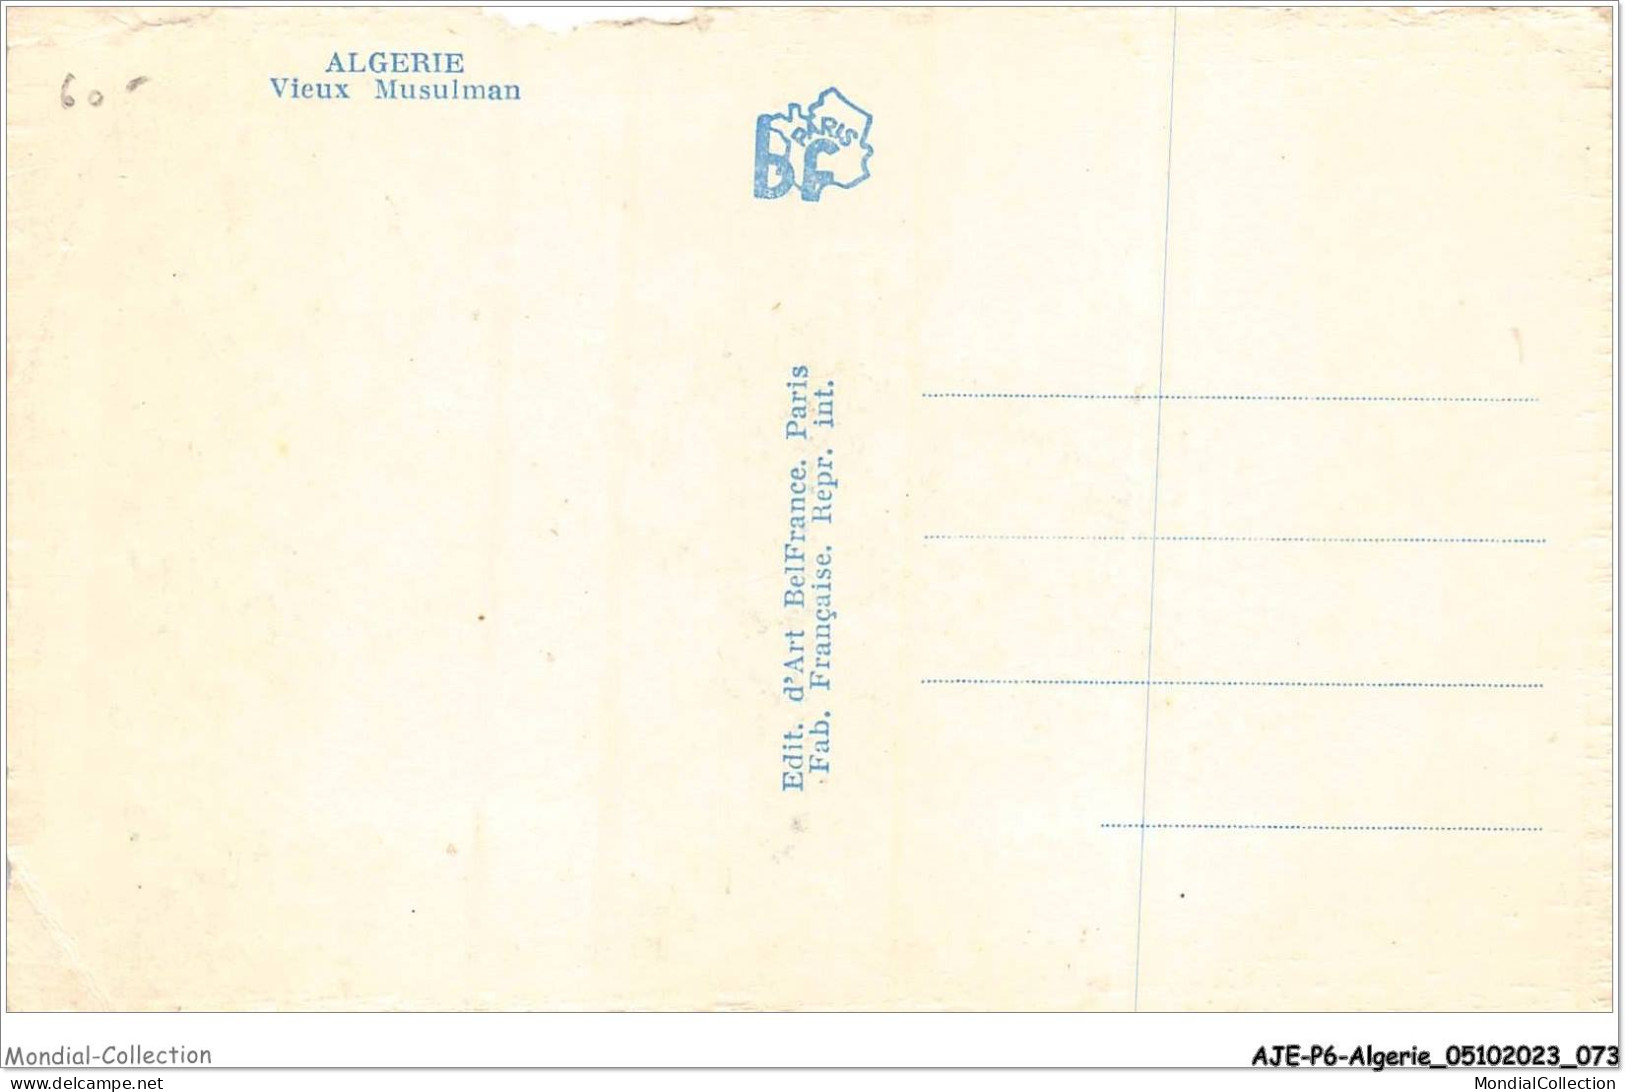 AJEP6-ALGERIE-0543 - ALGERIE - Vieux Musulman - Hombres